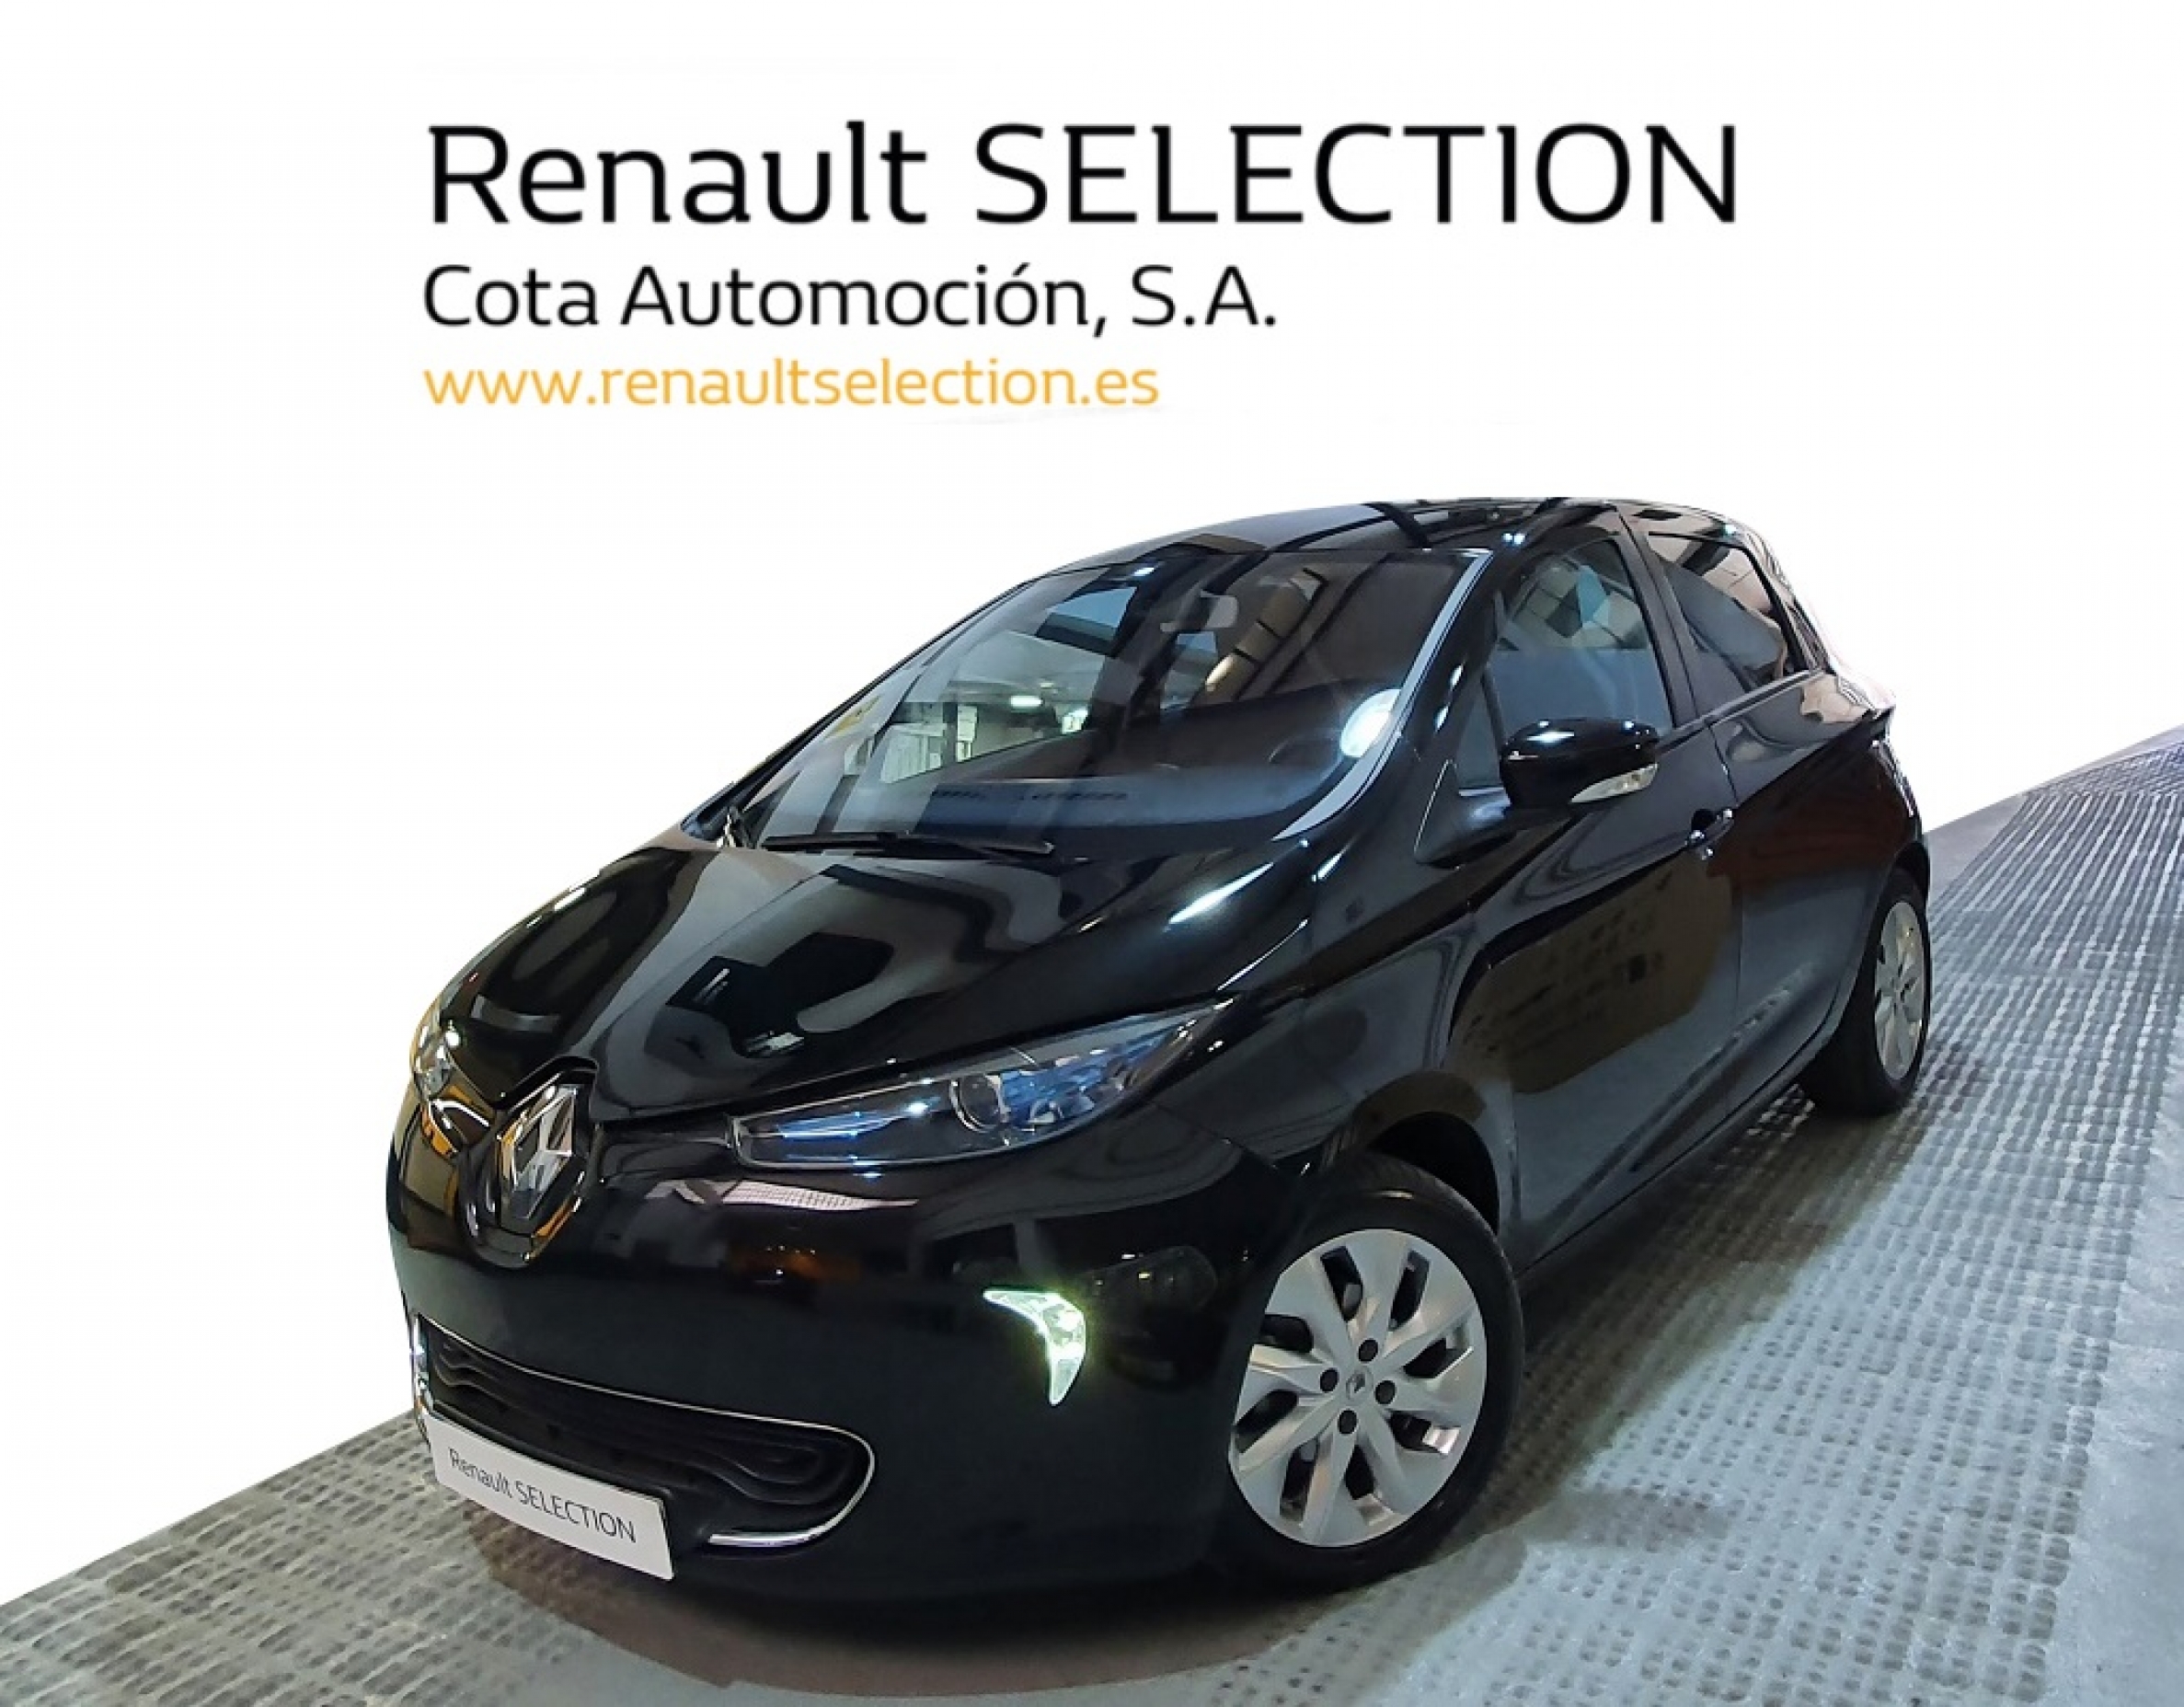 dulce Aparte Seguir Renault ZOE 11000€ - Segunda mano y ocasión